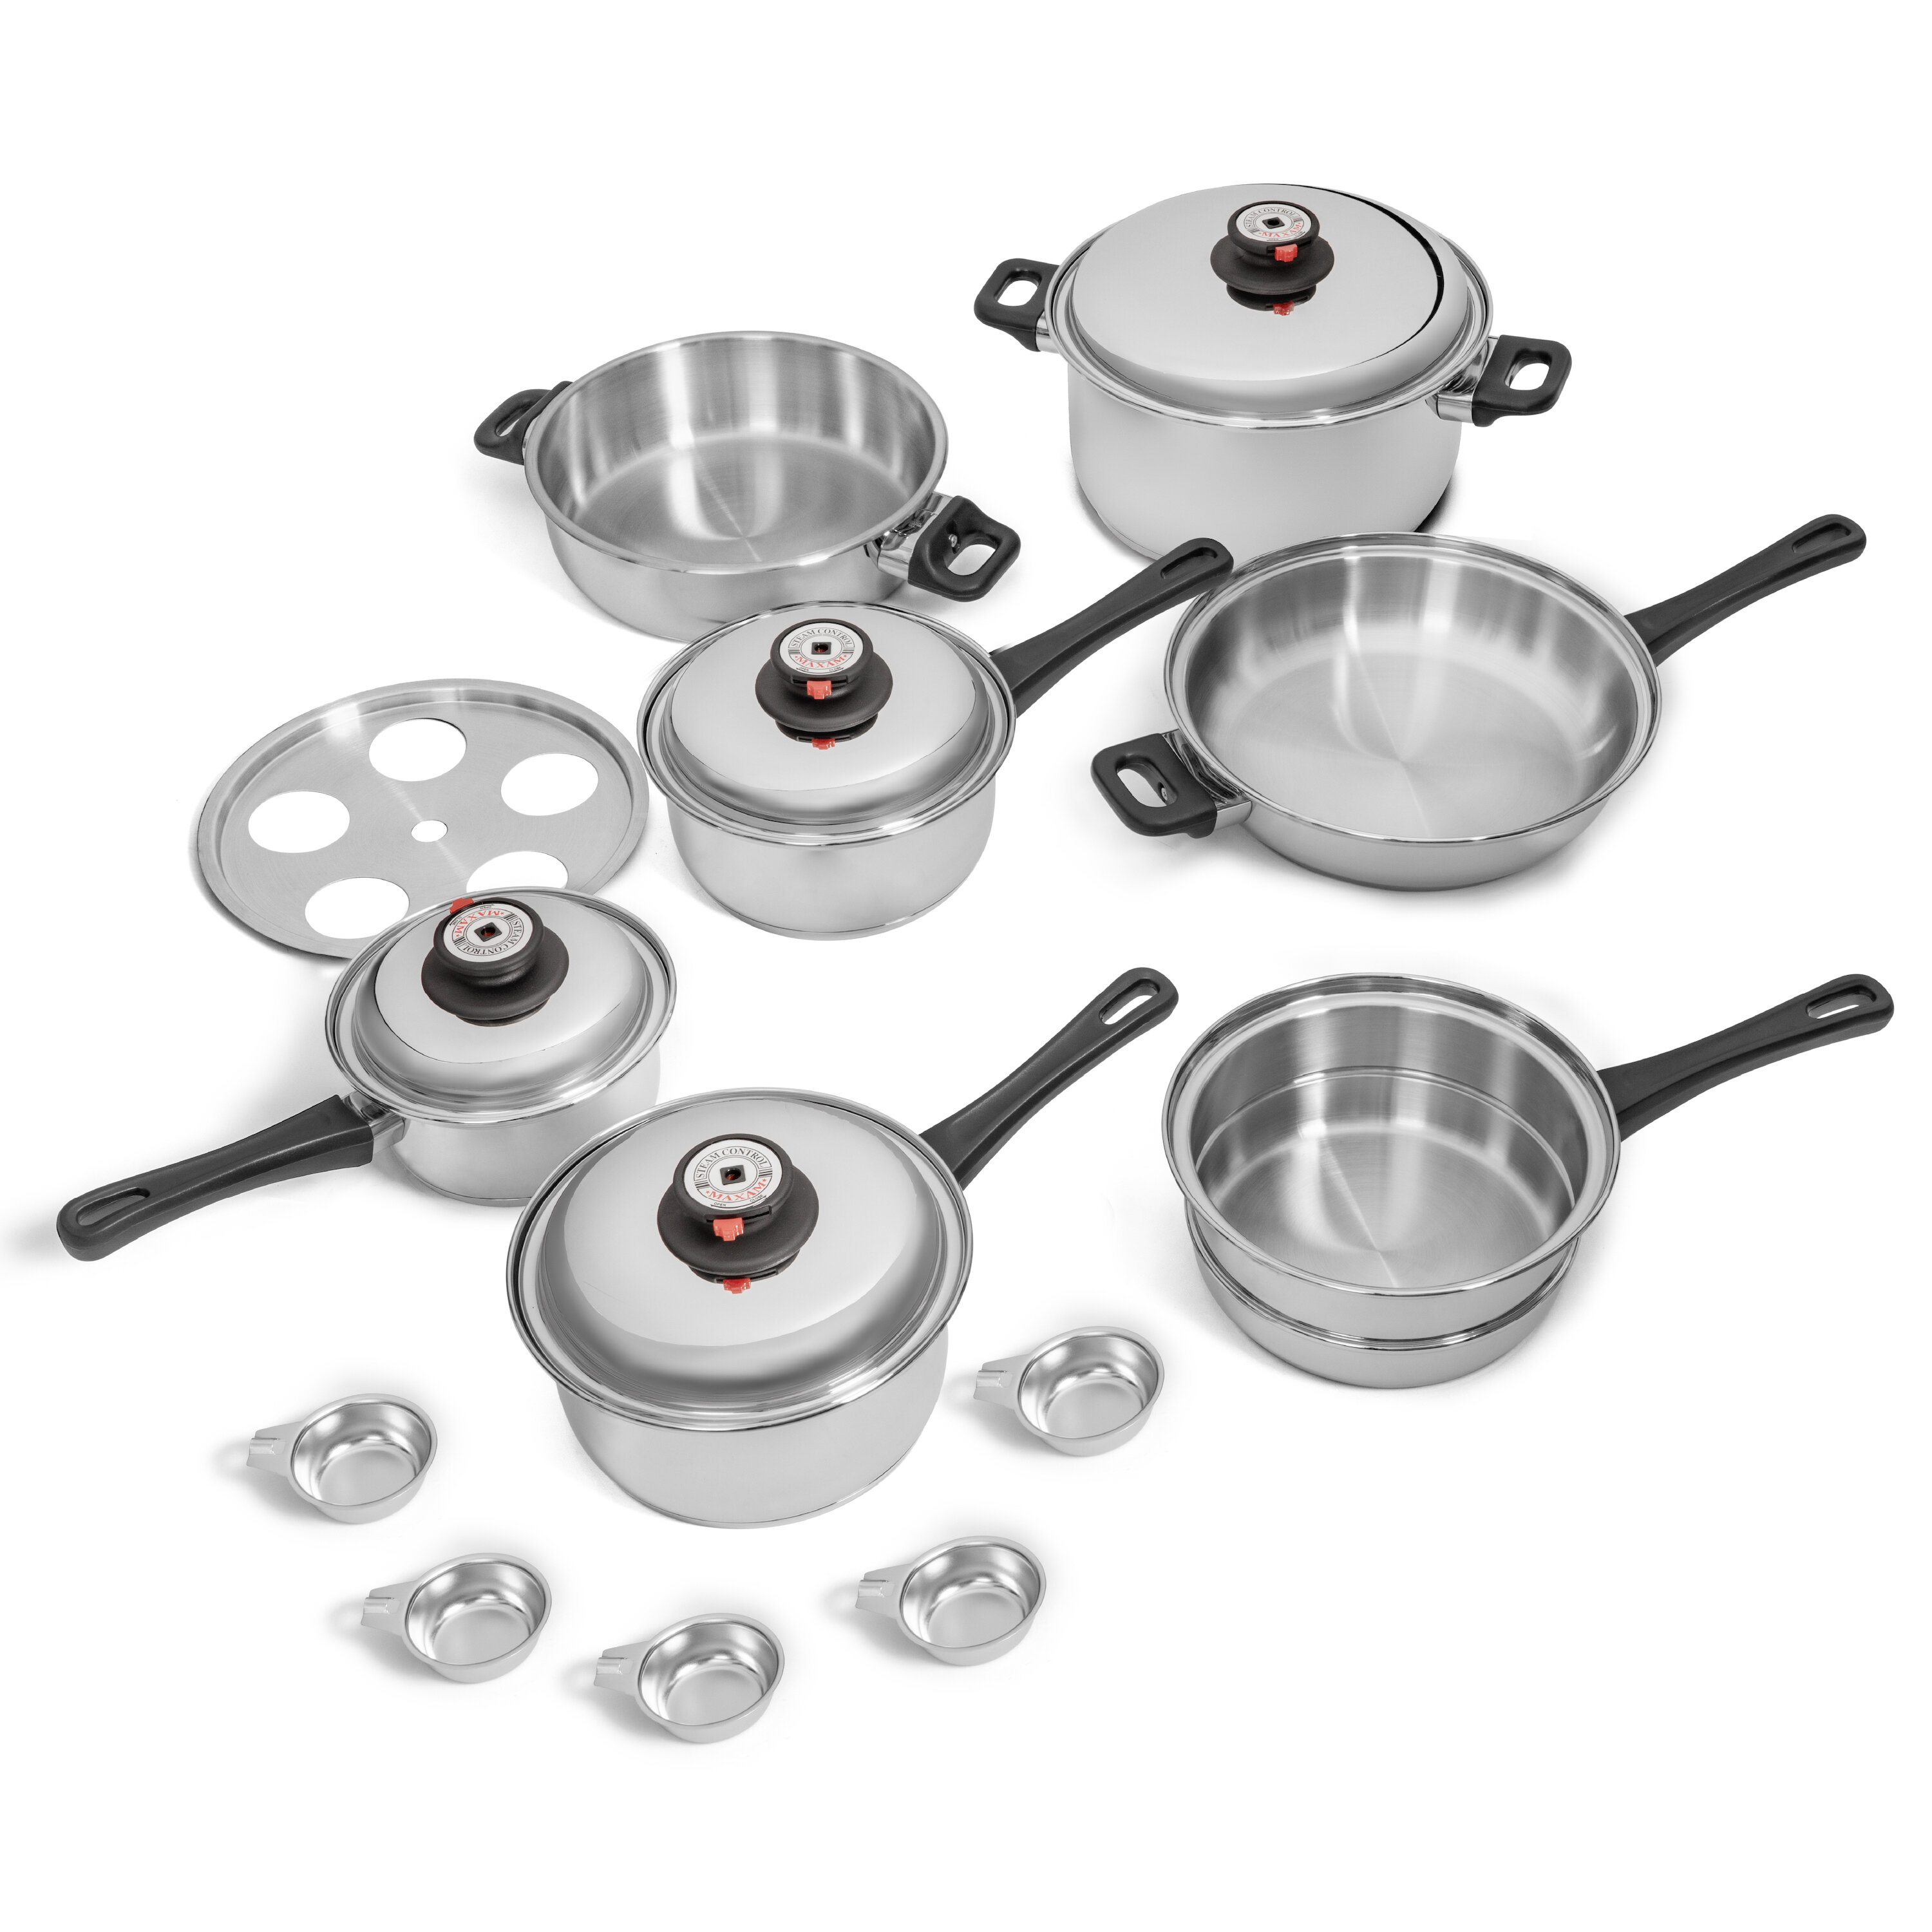 https://assets.wfcdn.com/im/78418222/compr-r85/1670/167014670/maxam-17-piece-stainless-steel-cookware-set.jpg